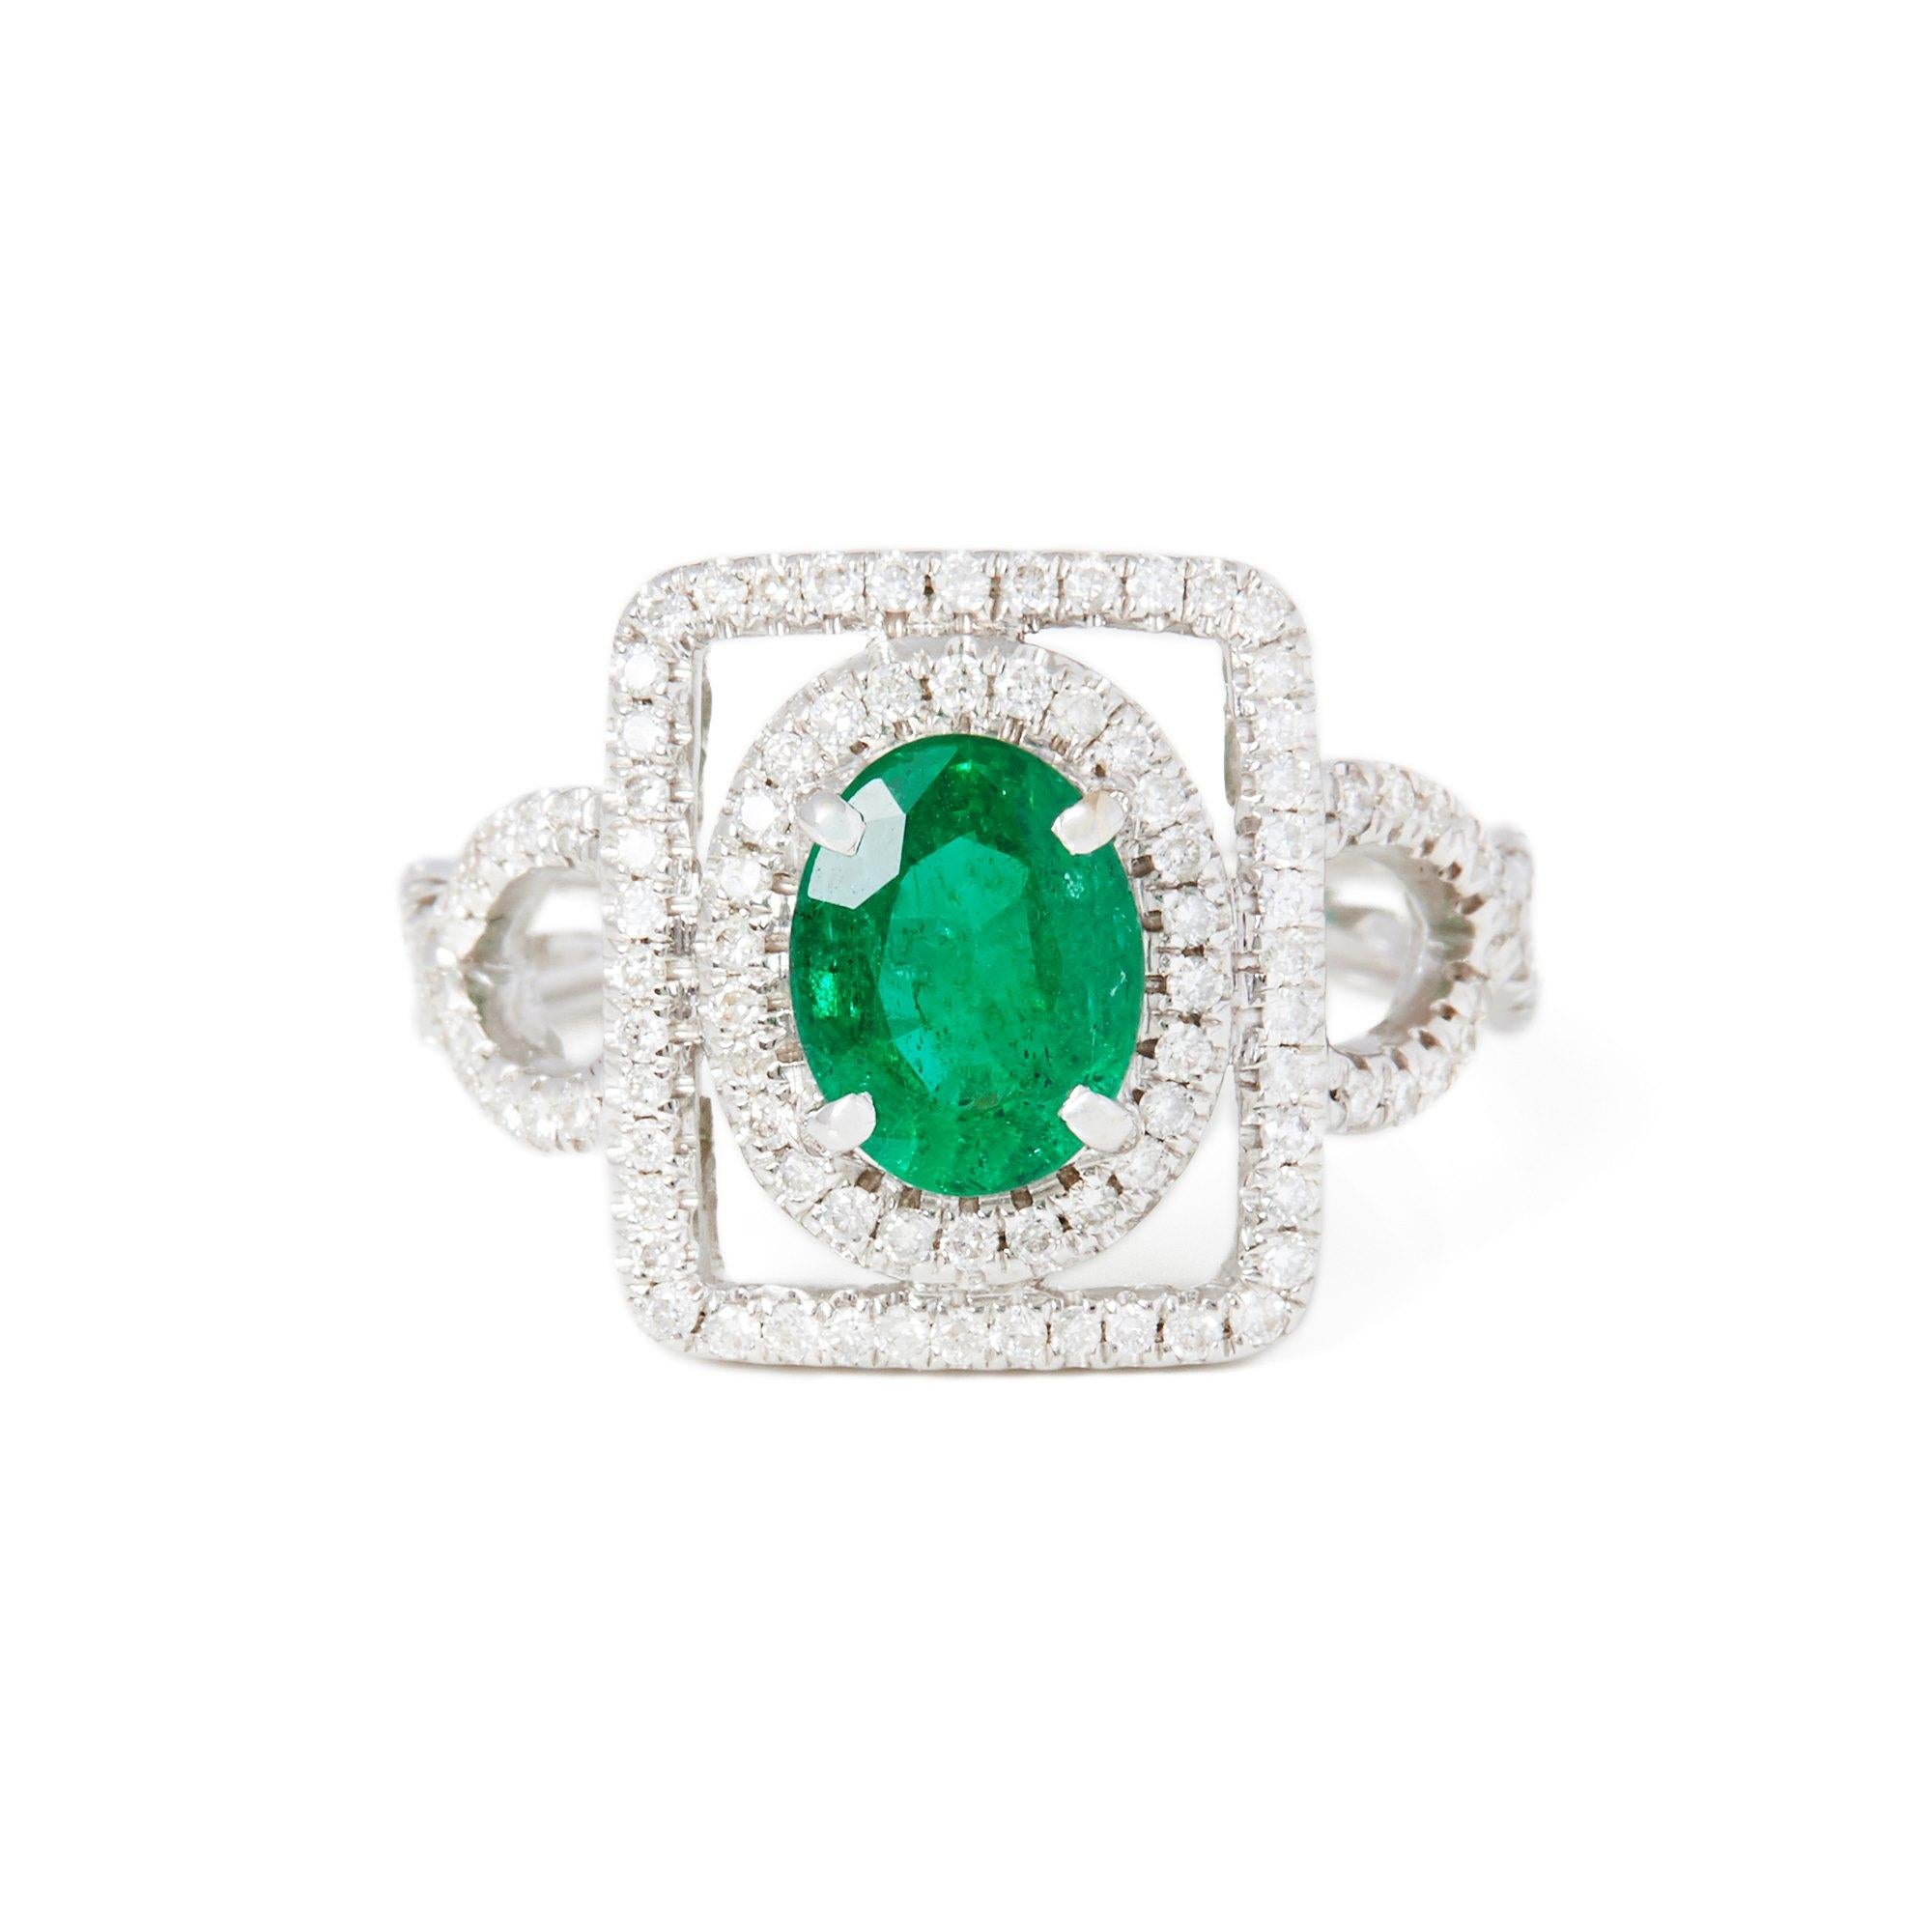 Dieser von David Jerome entworfene Ring stammt aus seiner privaten Collection und weist einen Smaragd von insgesamt 1,58 Karat auf, der in Sambia gewonnen wurde. Besetzt mit runden Diamanten im Brillantschliff von insgesamt 0,59 ct. in einer Fassung